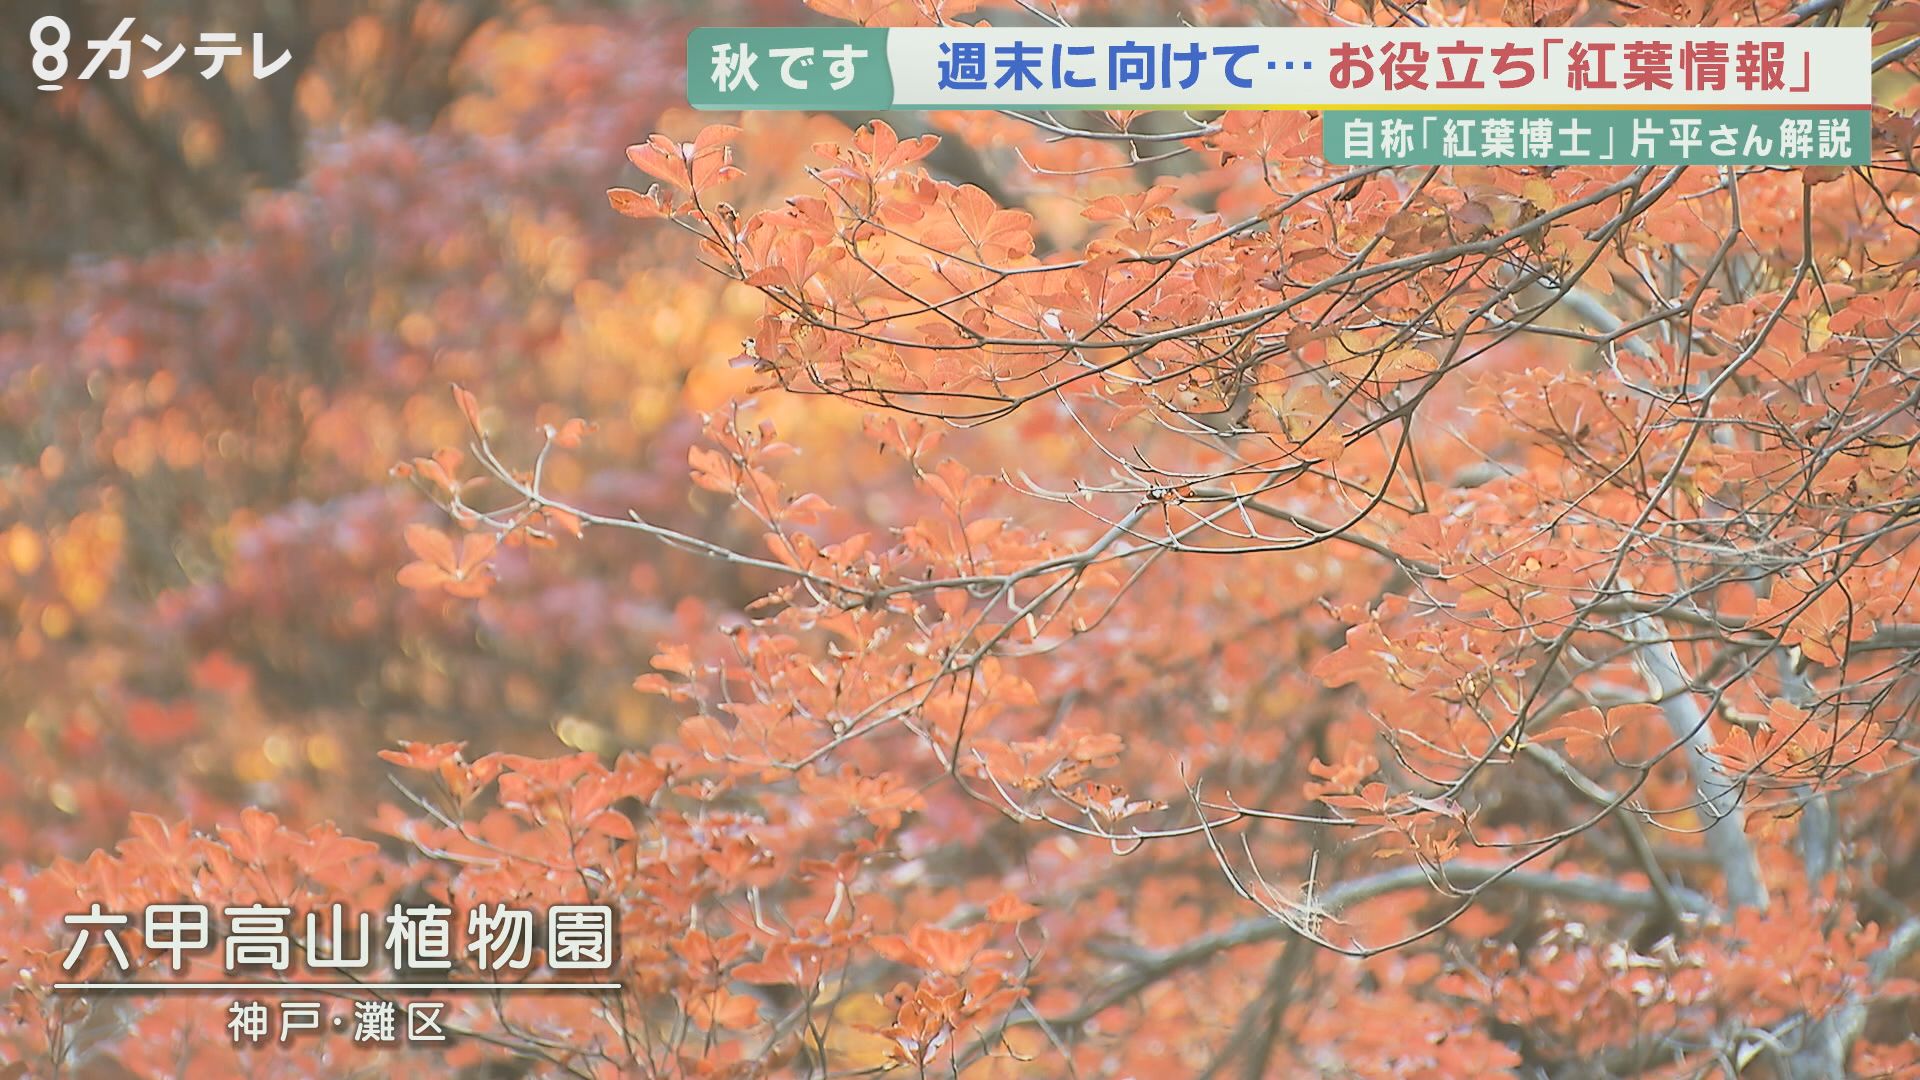 【解説】今年の紅葉は「鮮やかで美しい」 その2つの理由 台風もほとんど来ておらず…11月は気温低く